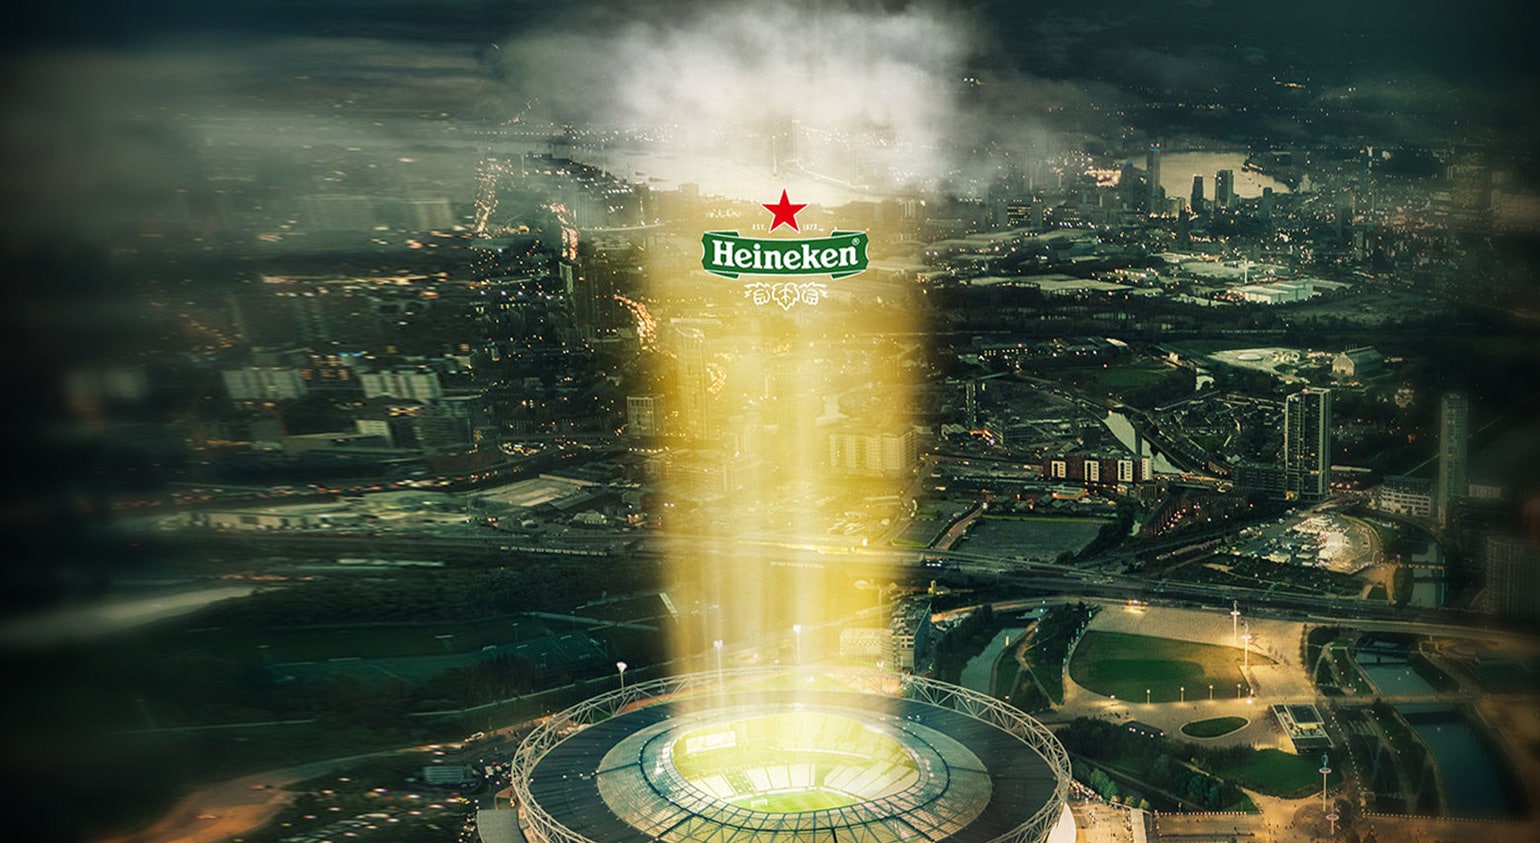 海尼根酒杯在薄暮時分覆蓋了城市的天際線